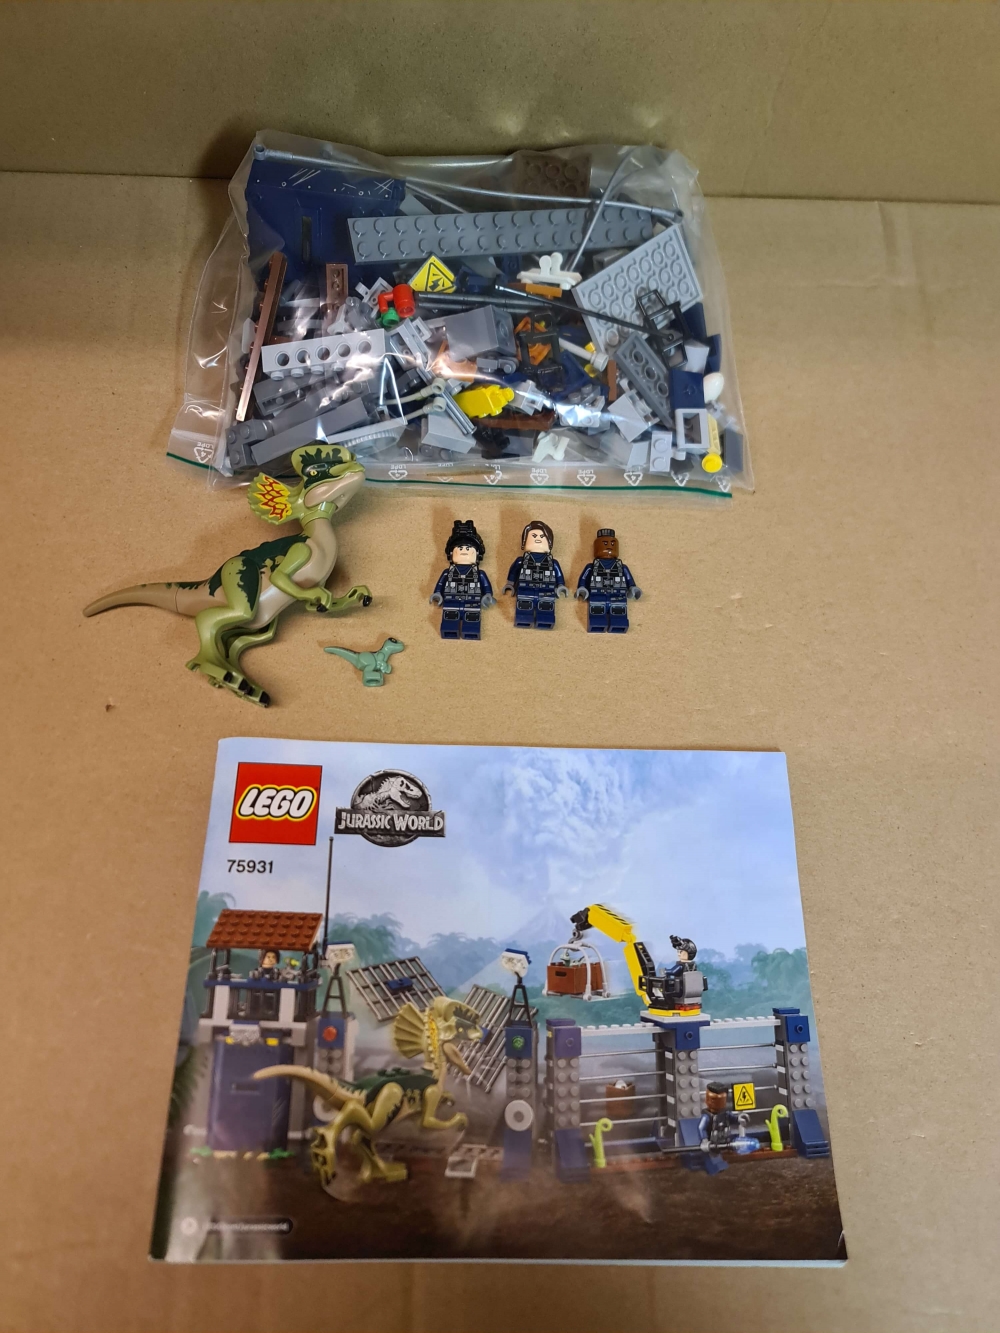 Sett 75931 fra Lego Jurassic World serien.
Meget pent.
Komplett med manual.